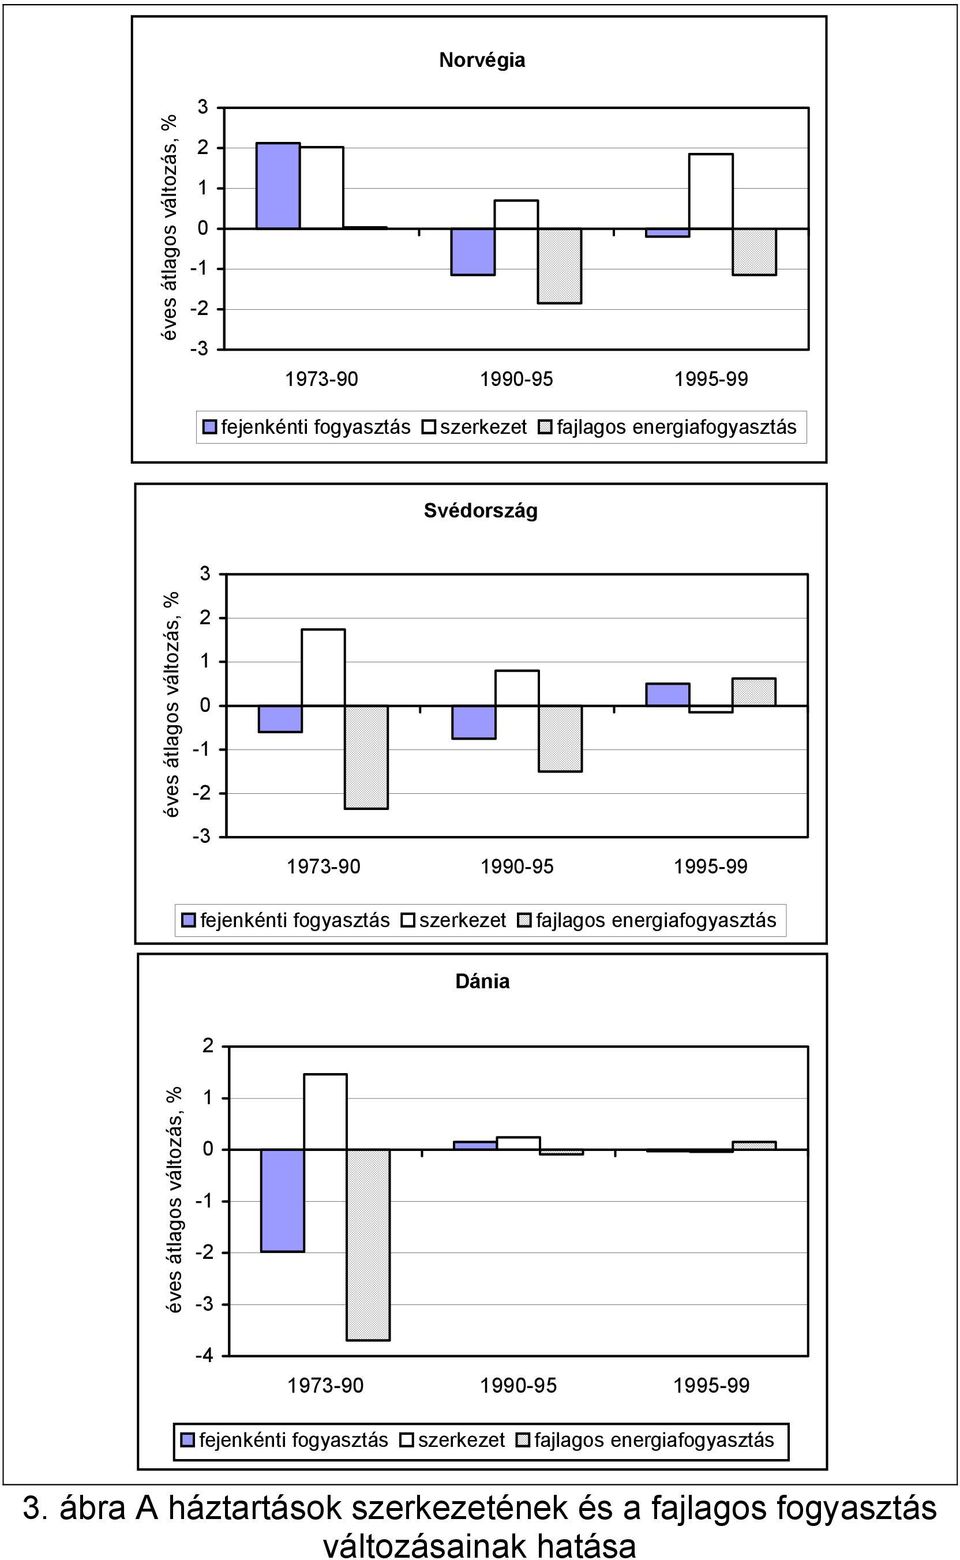 szerkezet fajlagos energiafogyasztás Dánia 2 éves átlagos változás, % 1 0-1 -2-3 -4 1973-90 1990-95 1995-99 fejenkénti